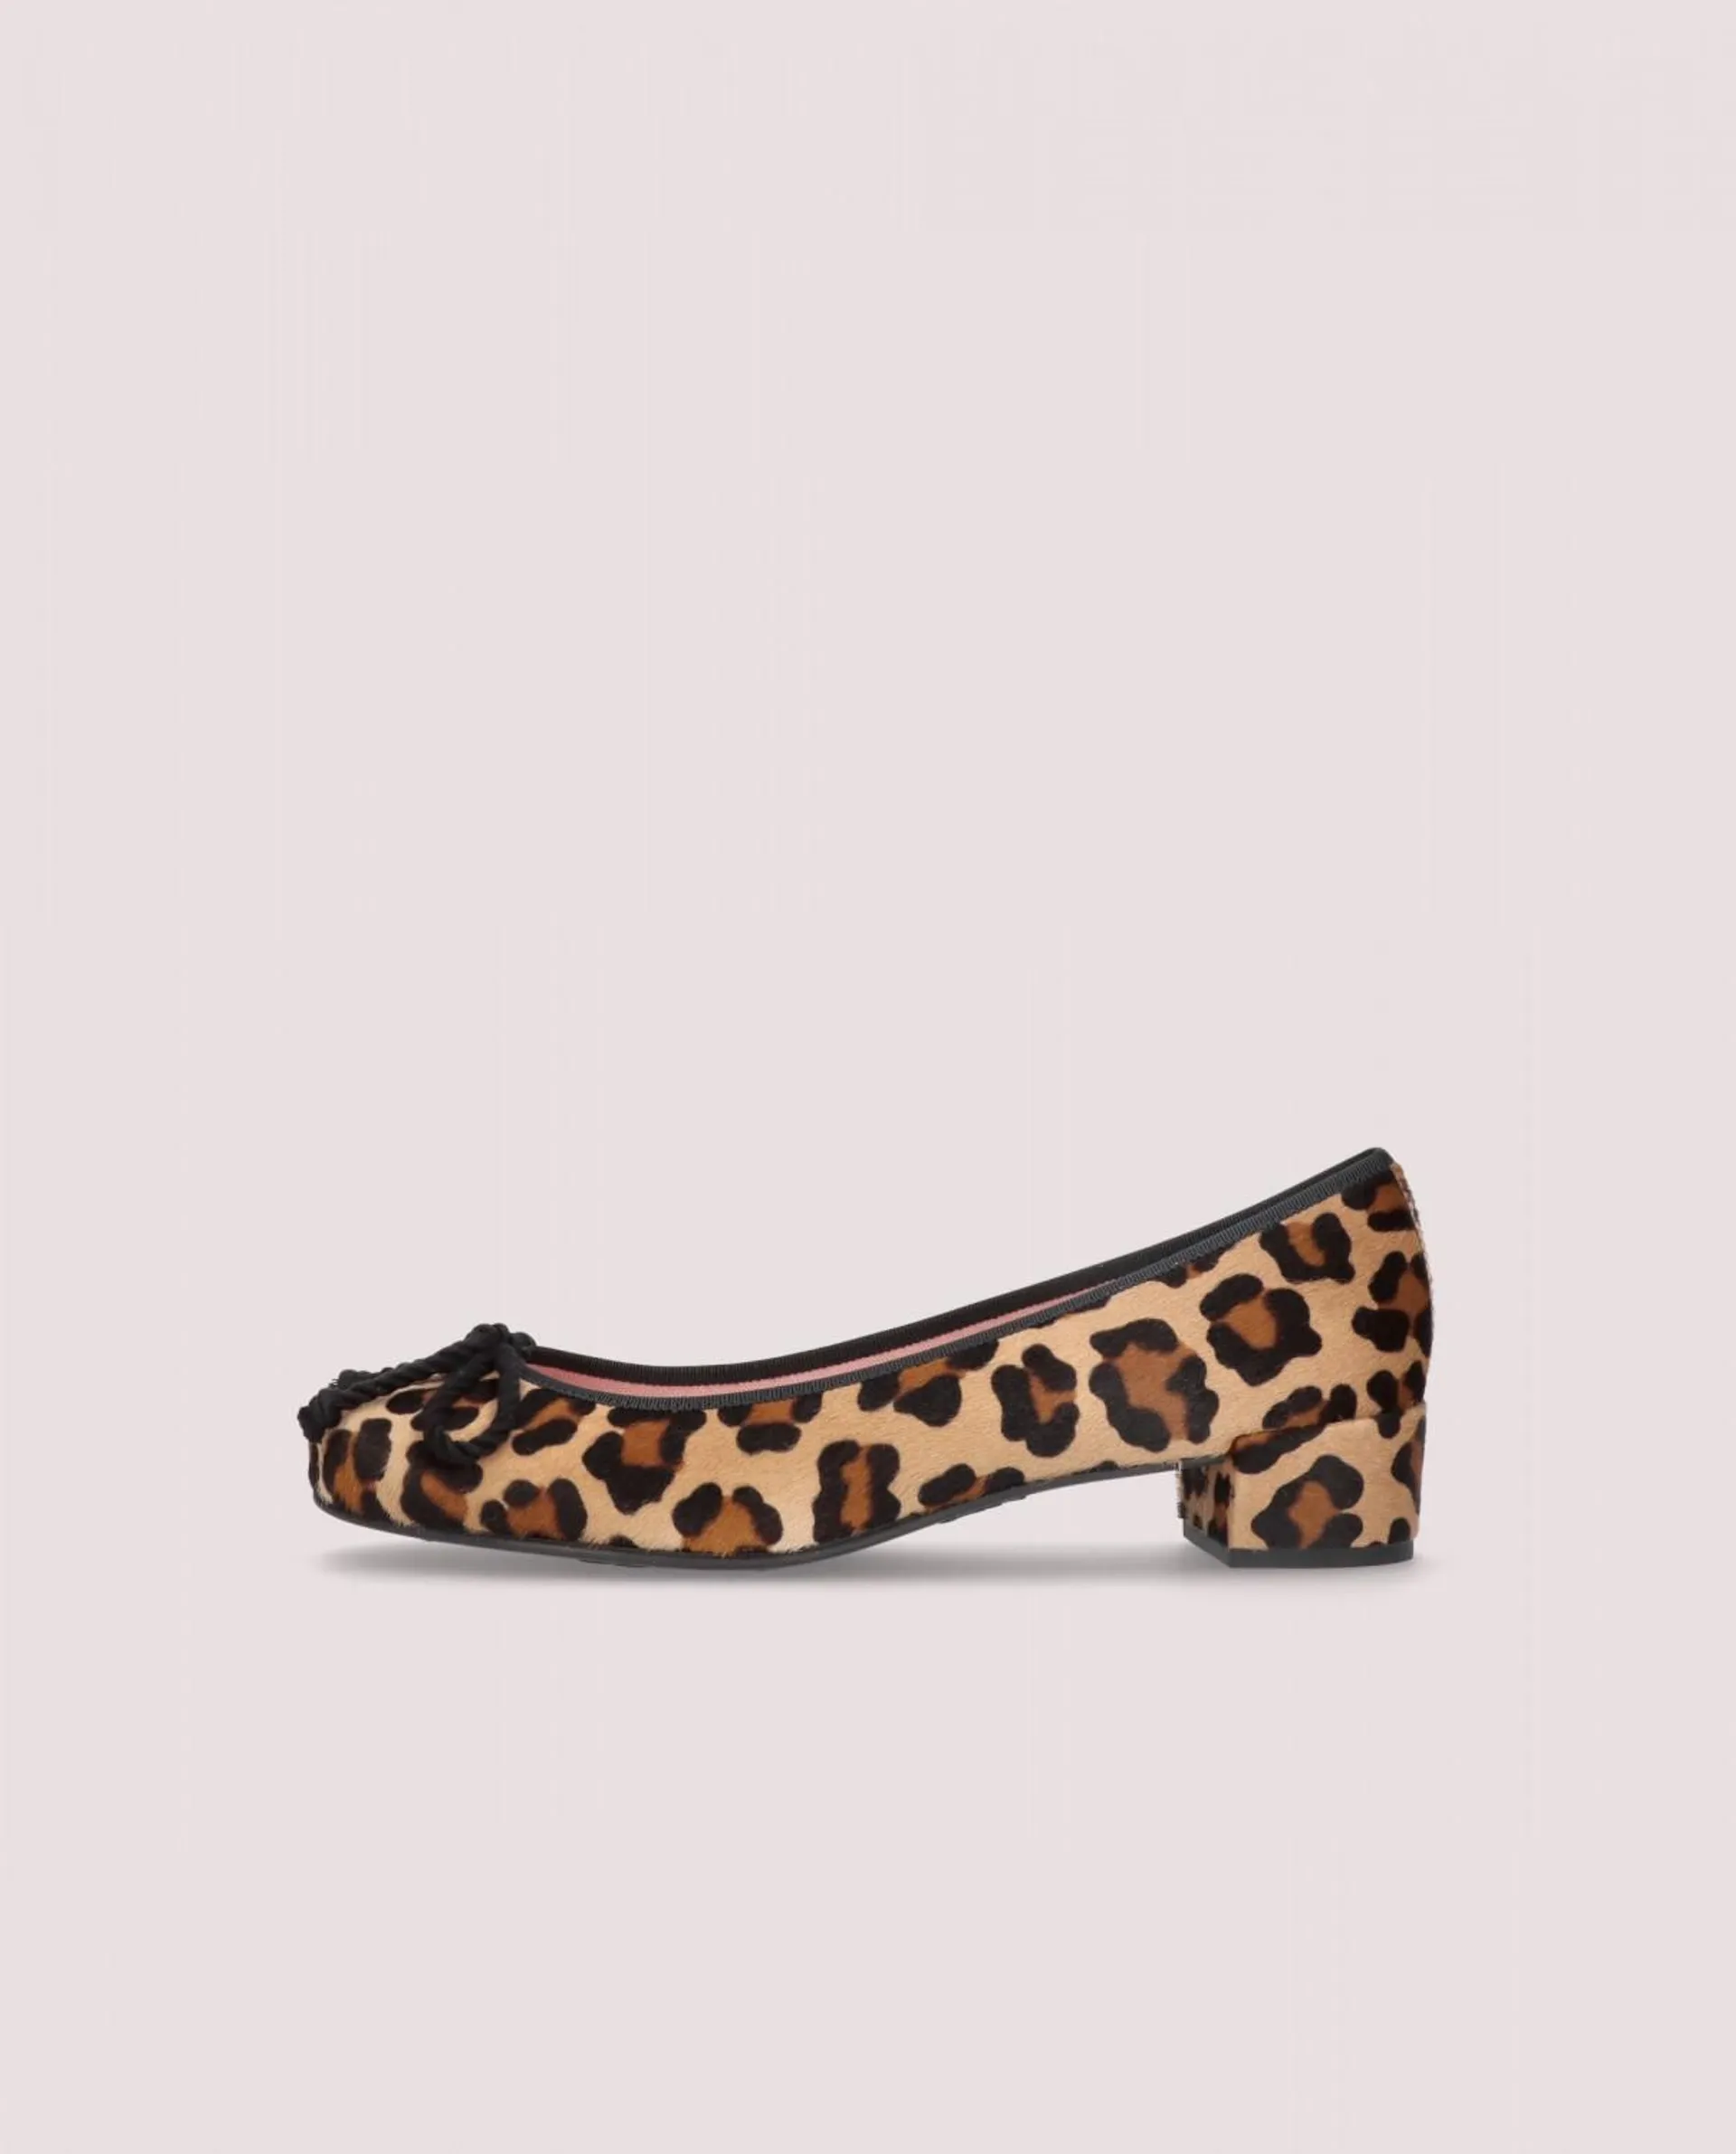 Bailarina de mujer de punta redonda. Zapato de tacón bajo de 3cm en poni estampado de leopardo. Lazo y falla en color negro.